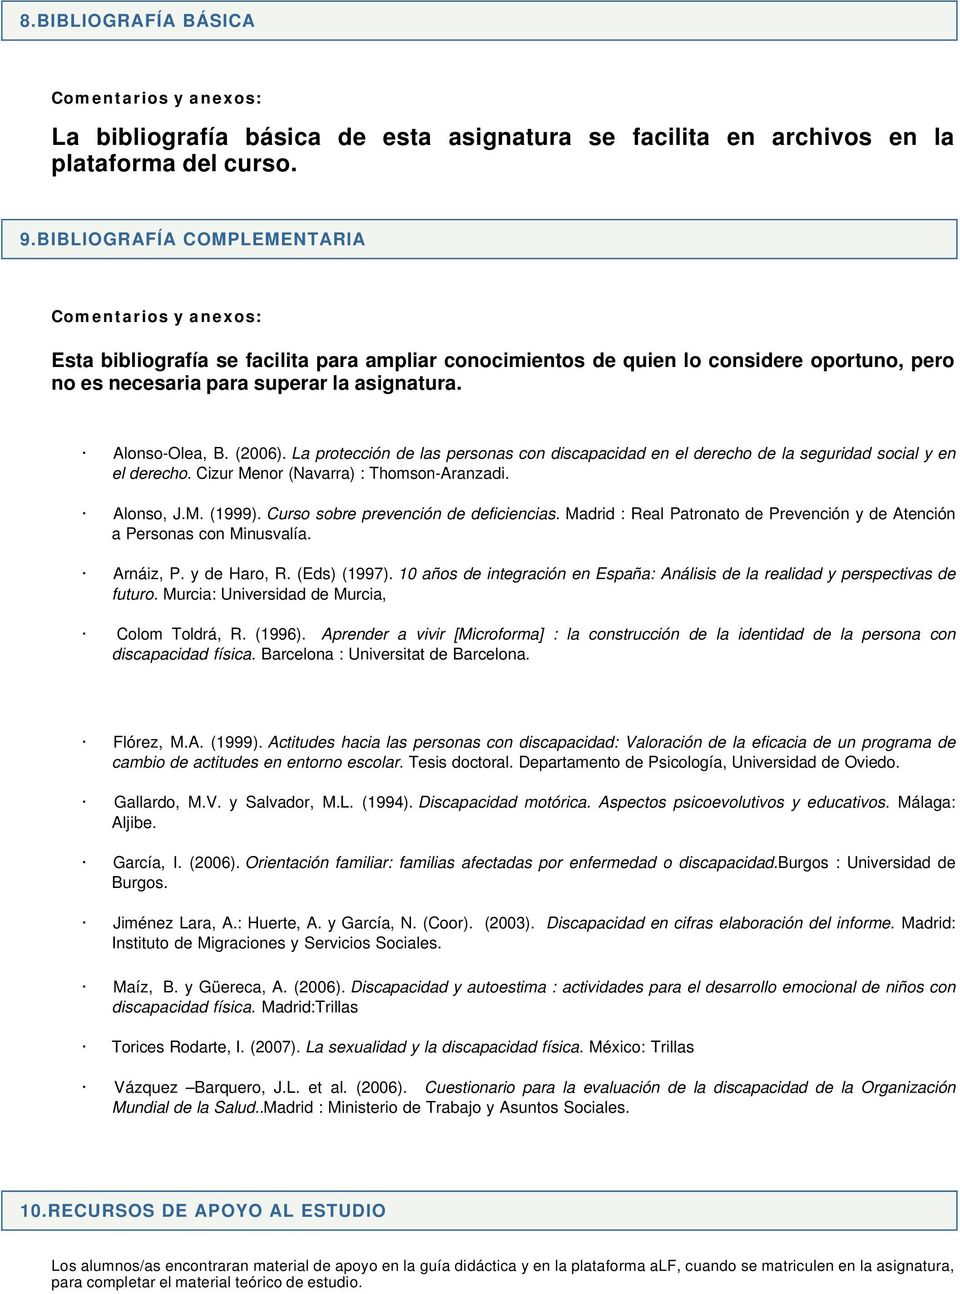 Alonso-Olea, B. (2006). La protección de las personas con discapacidad en el derecho de la seguridad social y en el derecho. Cizur Menor (Navarra) : Thomson-Aranzadi. Alonso, J.M. (1999).